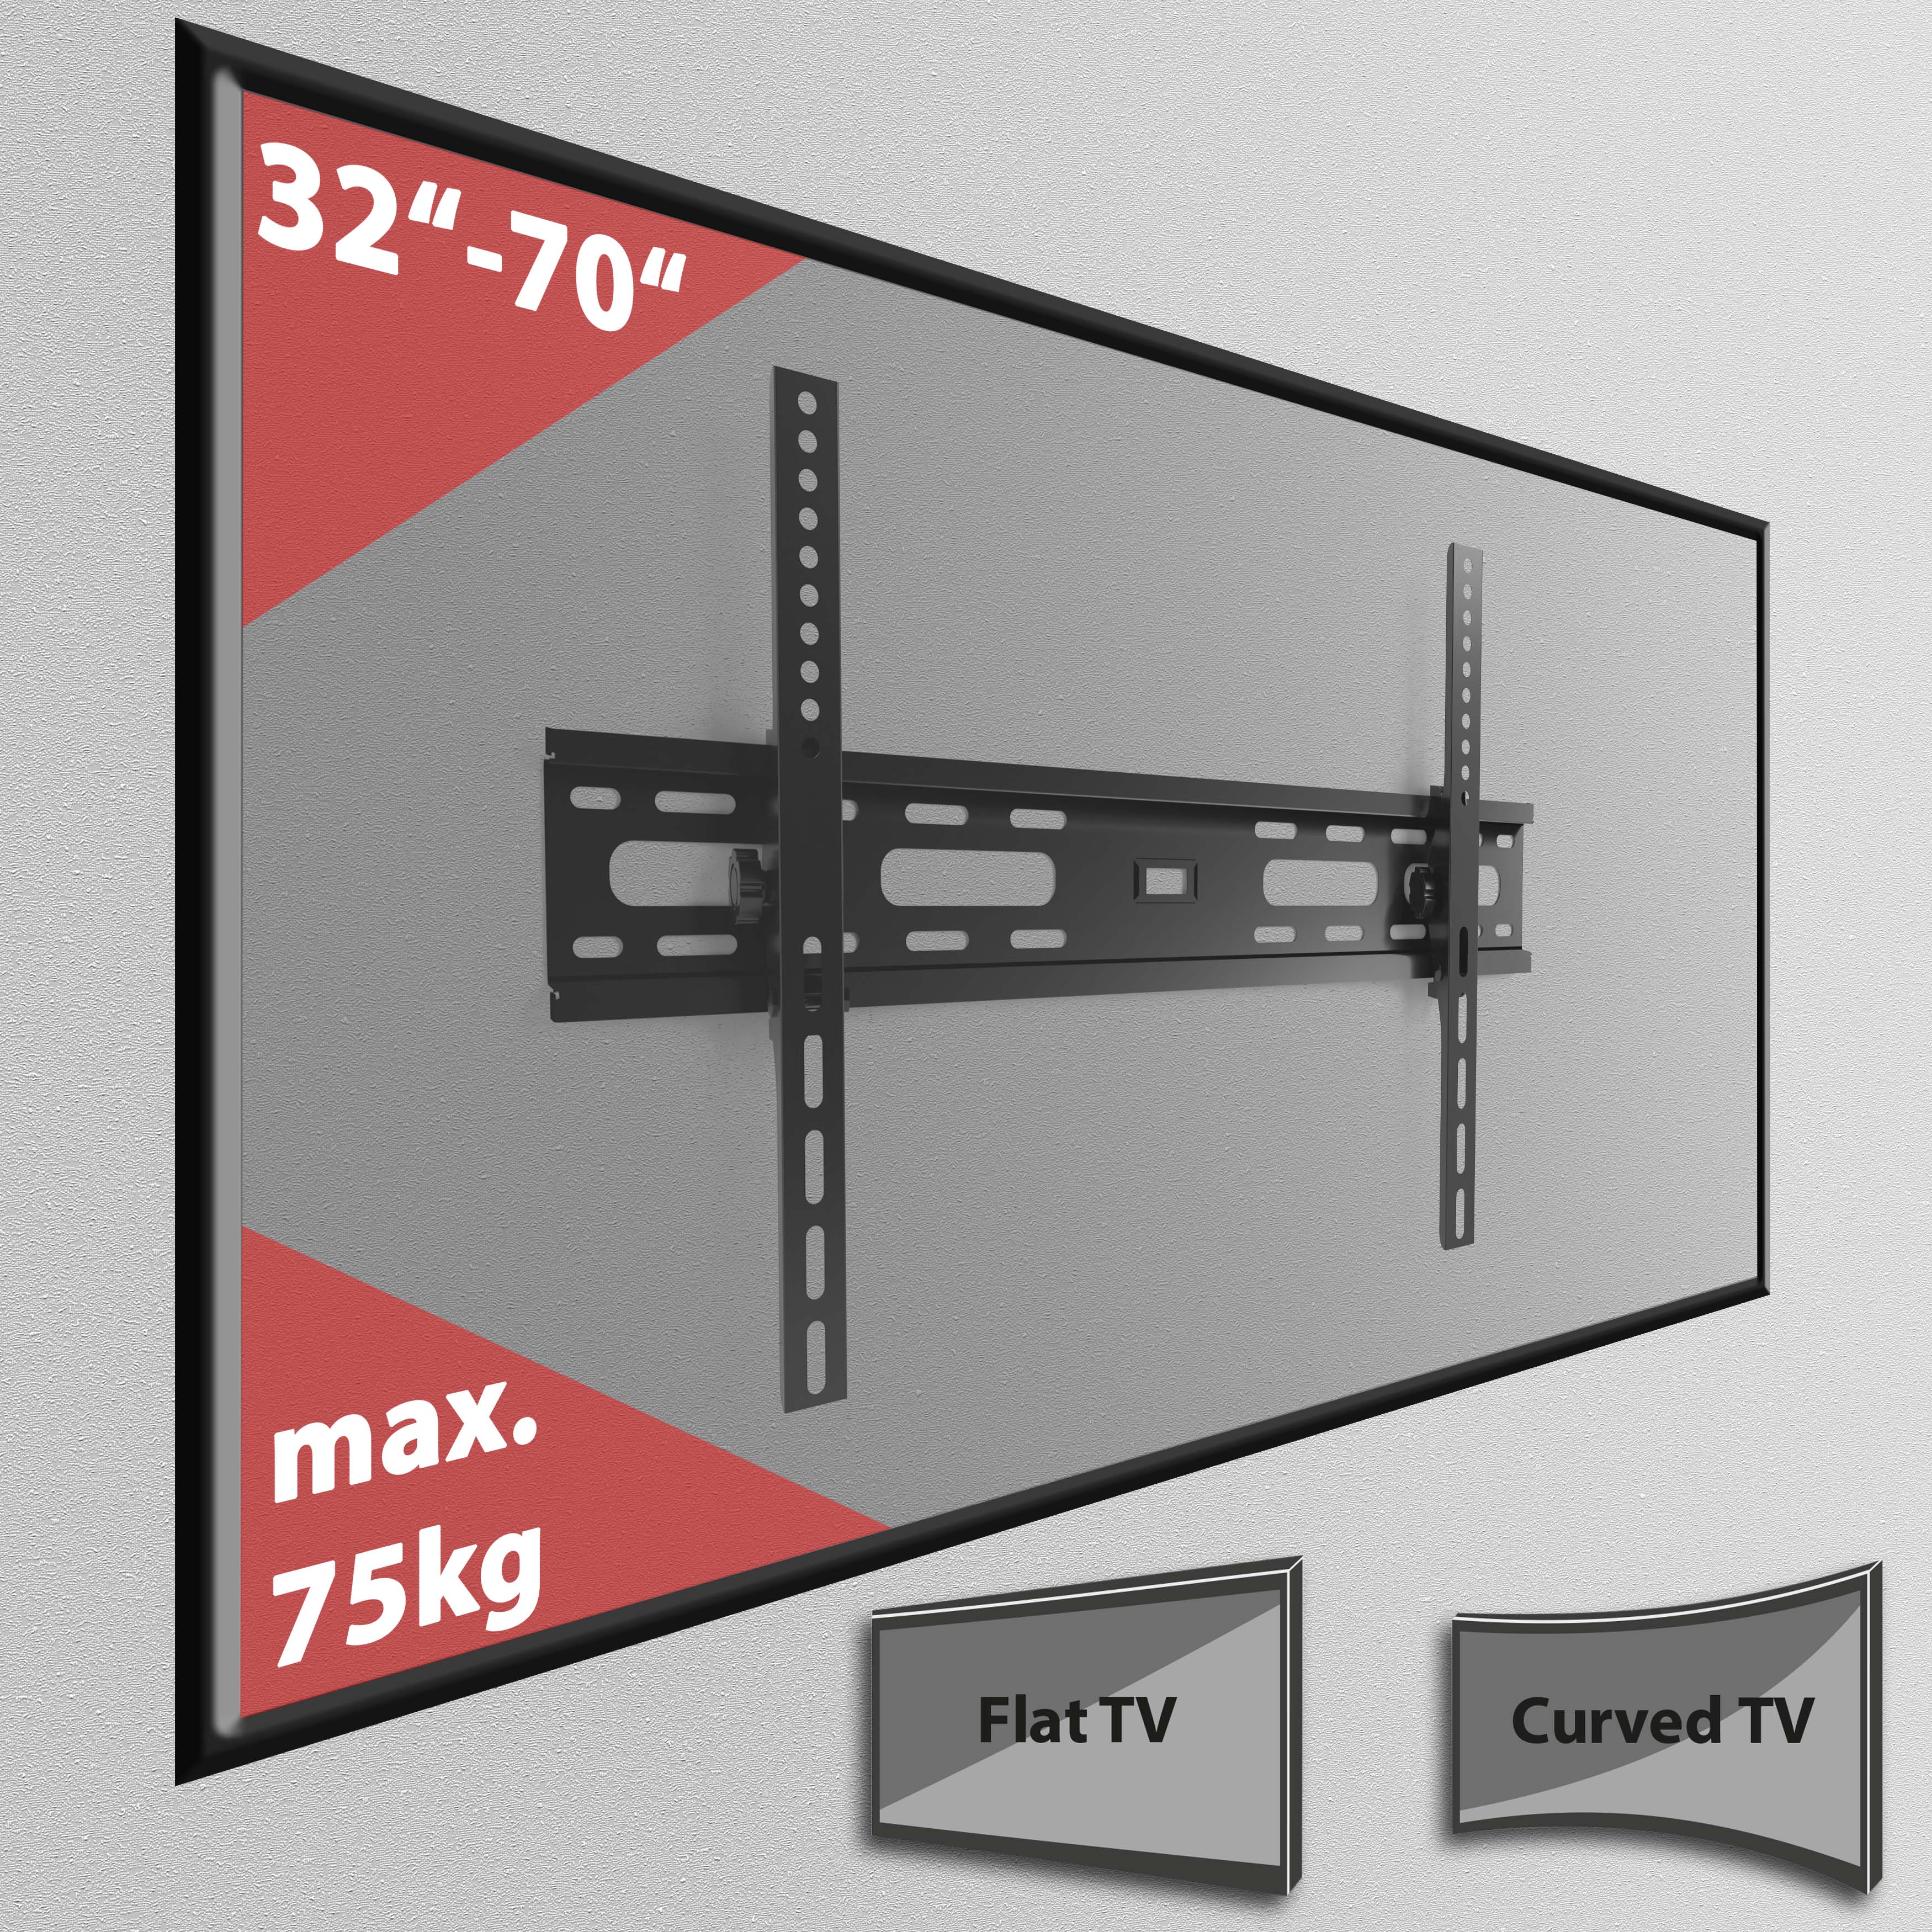 Flacher TV Wandhalter neigbar für 32" - 70" Monitore bis 75kg